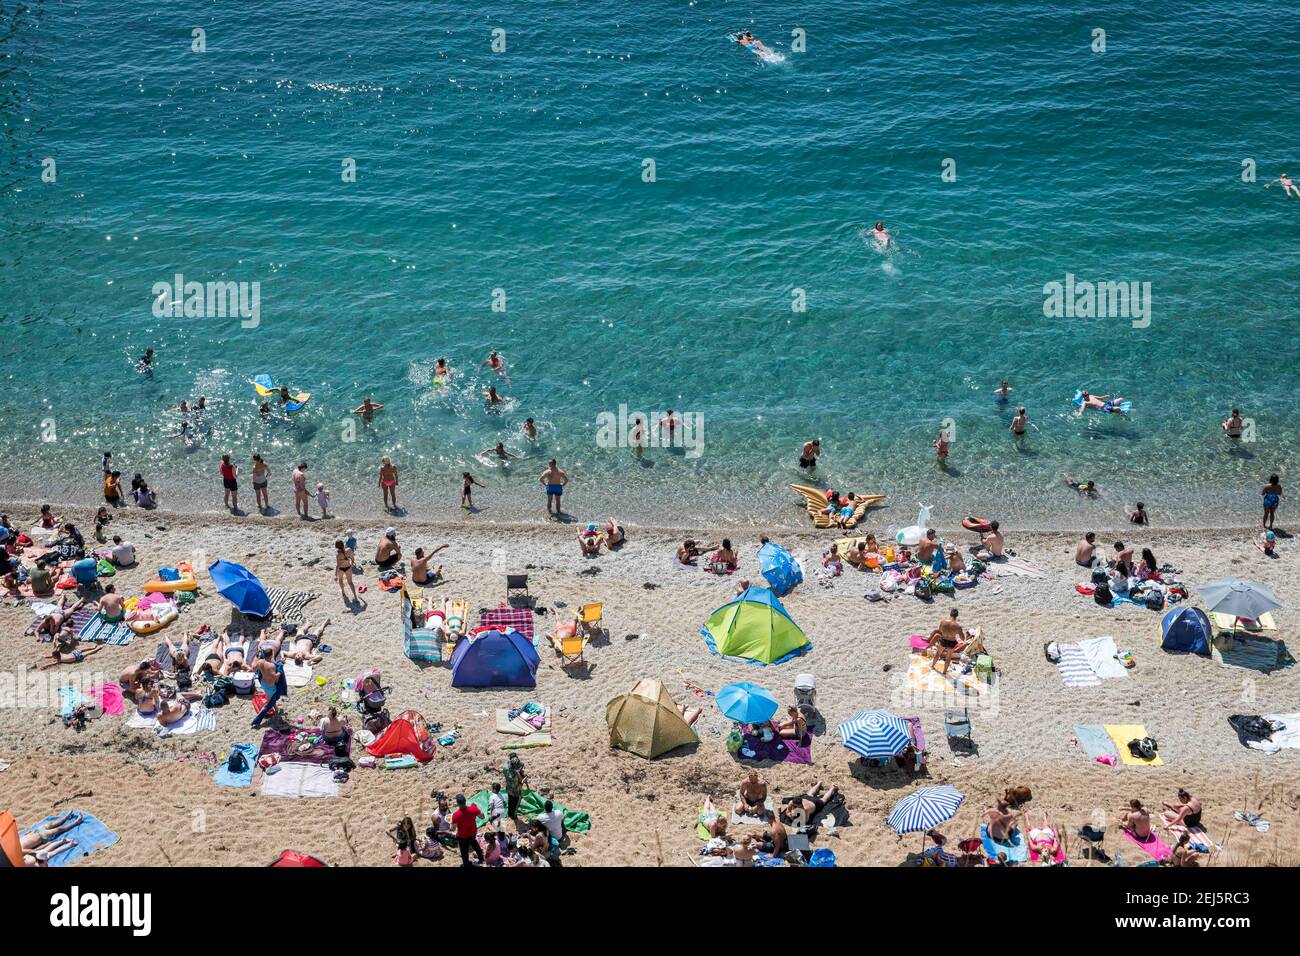 Le persone si affollano in spiaggia per rinfrescarsi durante il tempo caldo a Durdle Door, Lulworth, Dorset. Data immagine: Domenica 5 agosto 2018. Il credito fotografico dovrebbe essere: David Jensen/ Foto Stock